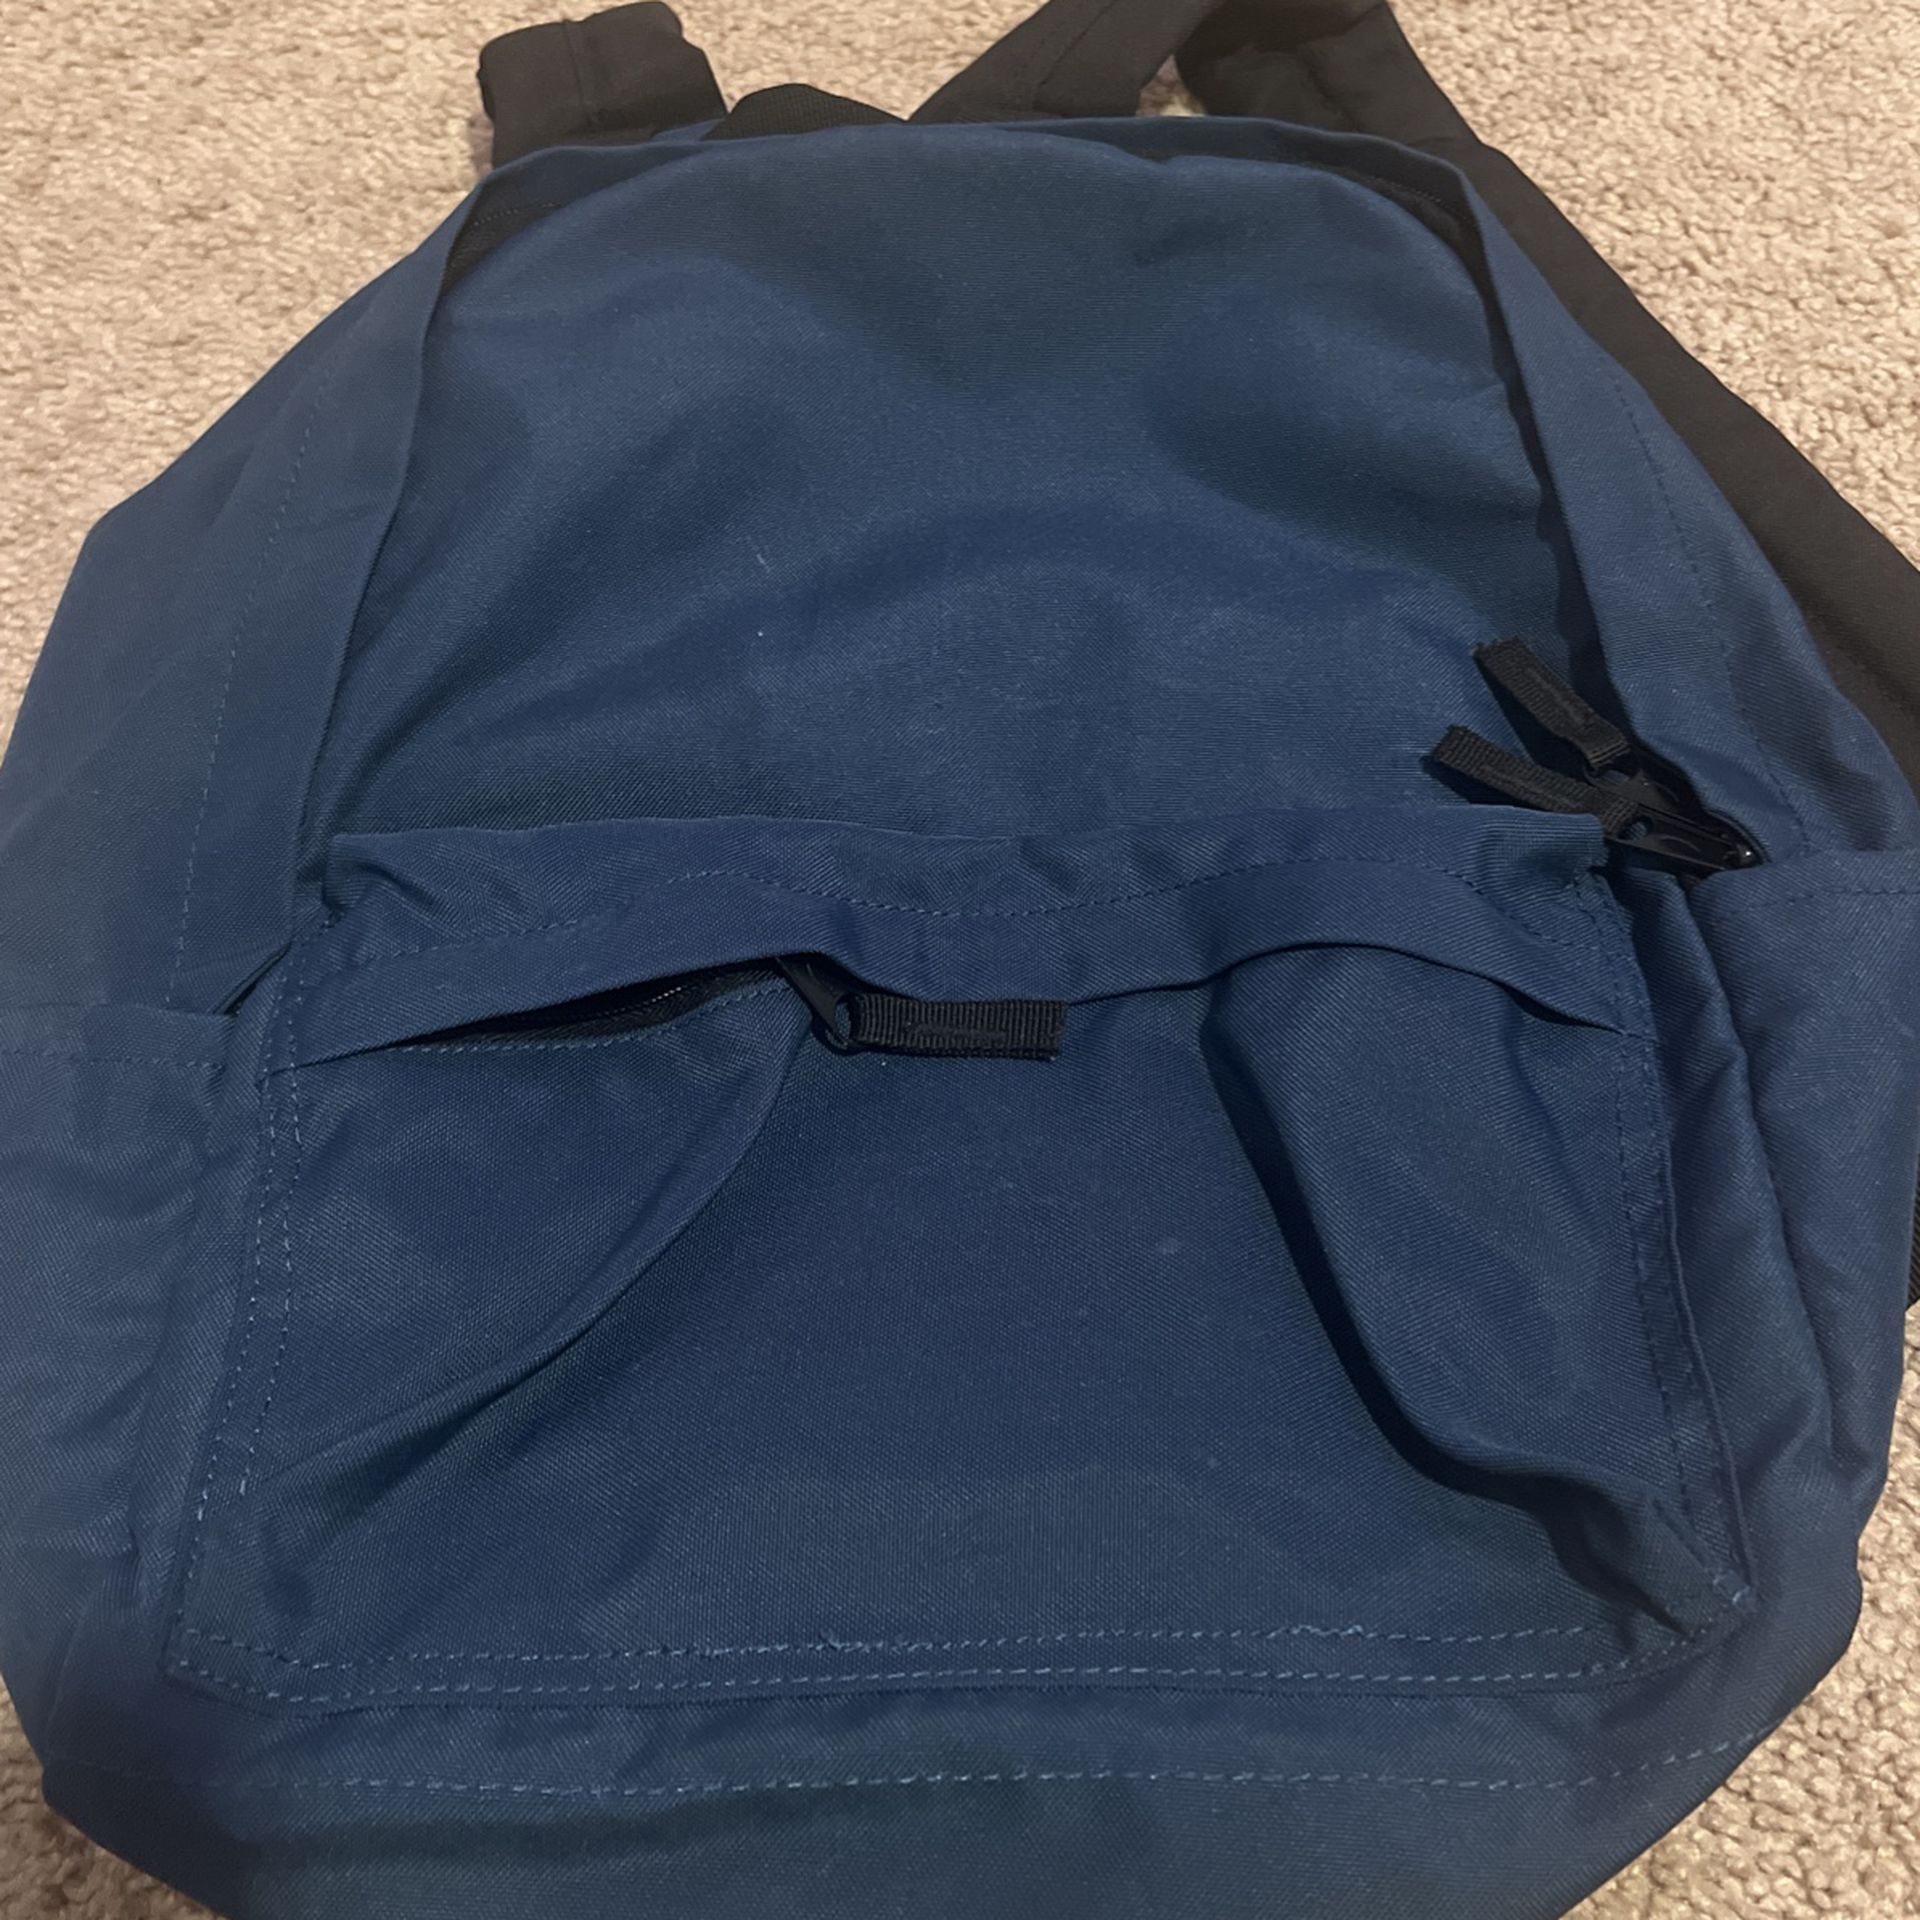 Blue Amazon Basics Backpack